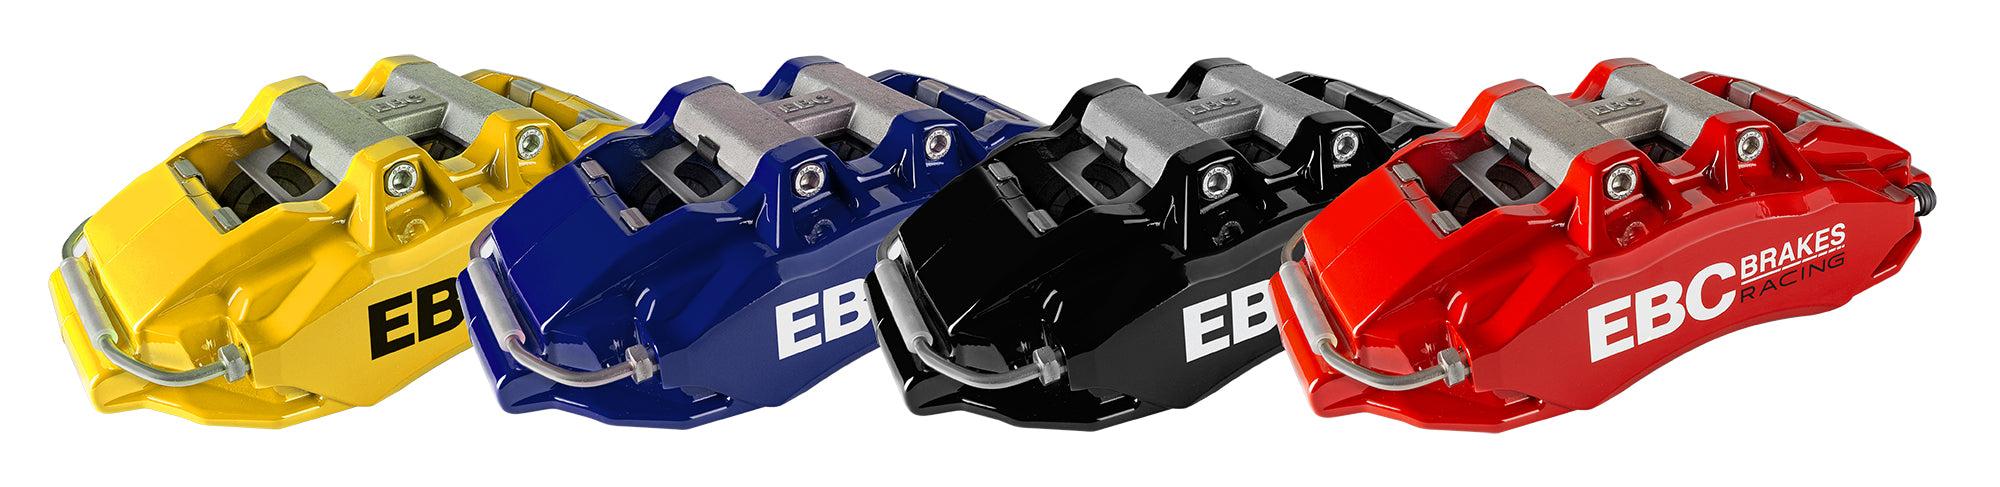 EBC 6-Piston Big Brake Kit - BMW E46 M3